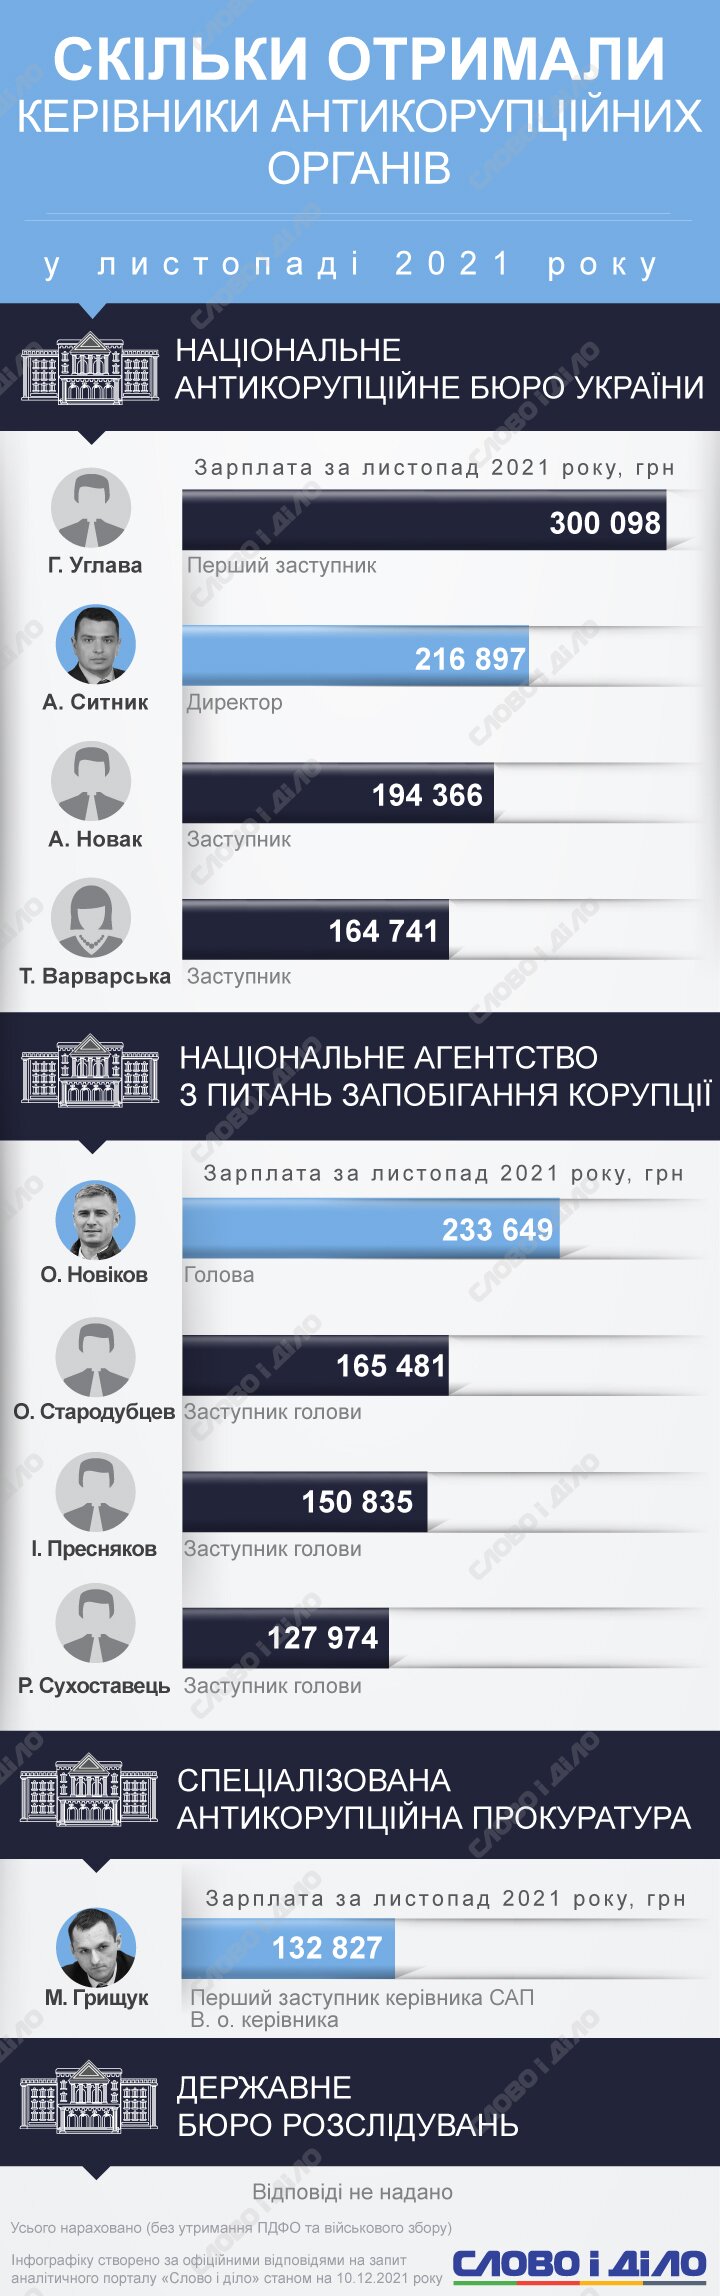 Артем Ситник із НАБУ у листопаді заробив майже 217 тисяч гривень, Олександр Новіков із НАЗК – 234 тисячі.